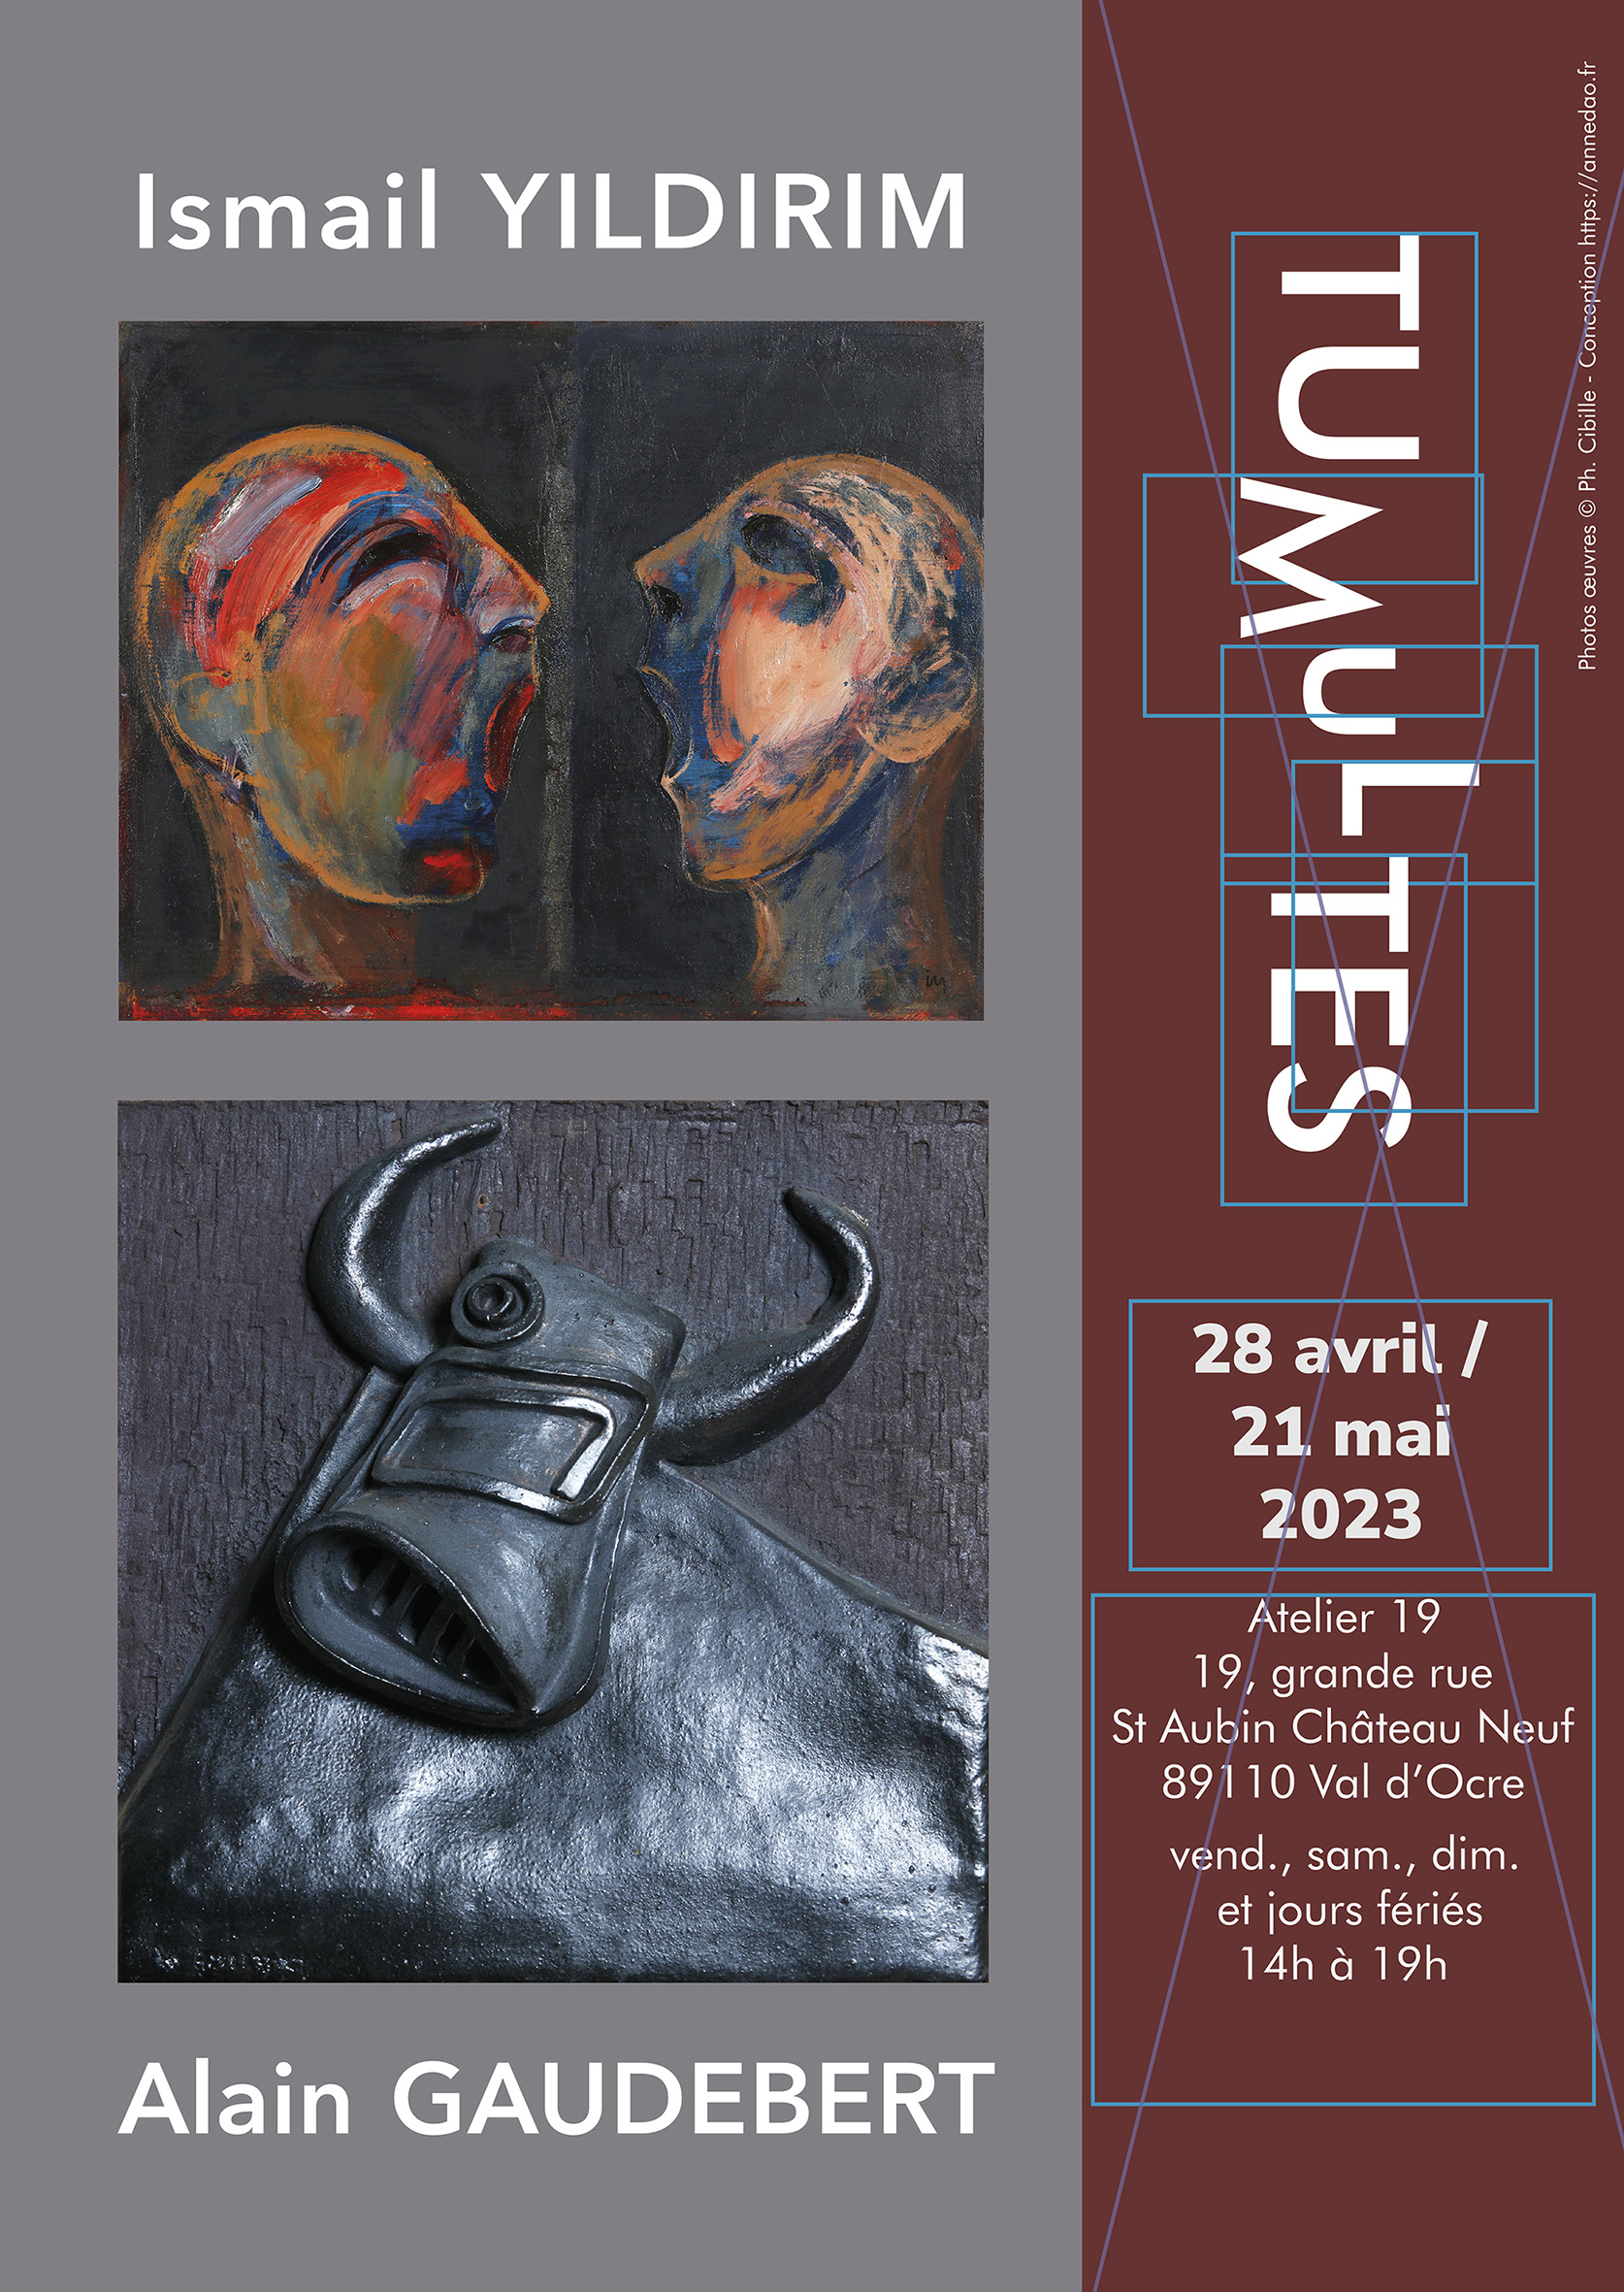 Tumultes, Alain Gaudebert et Ismail Yildirim, du 28 avril au 21 mai 2023, Val d’Ocre (Yonne)